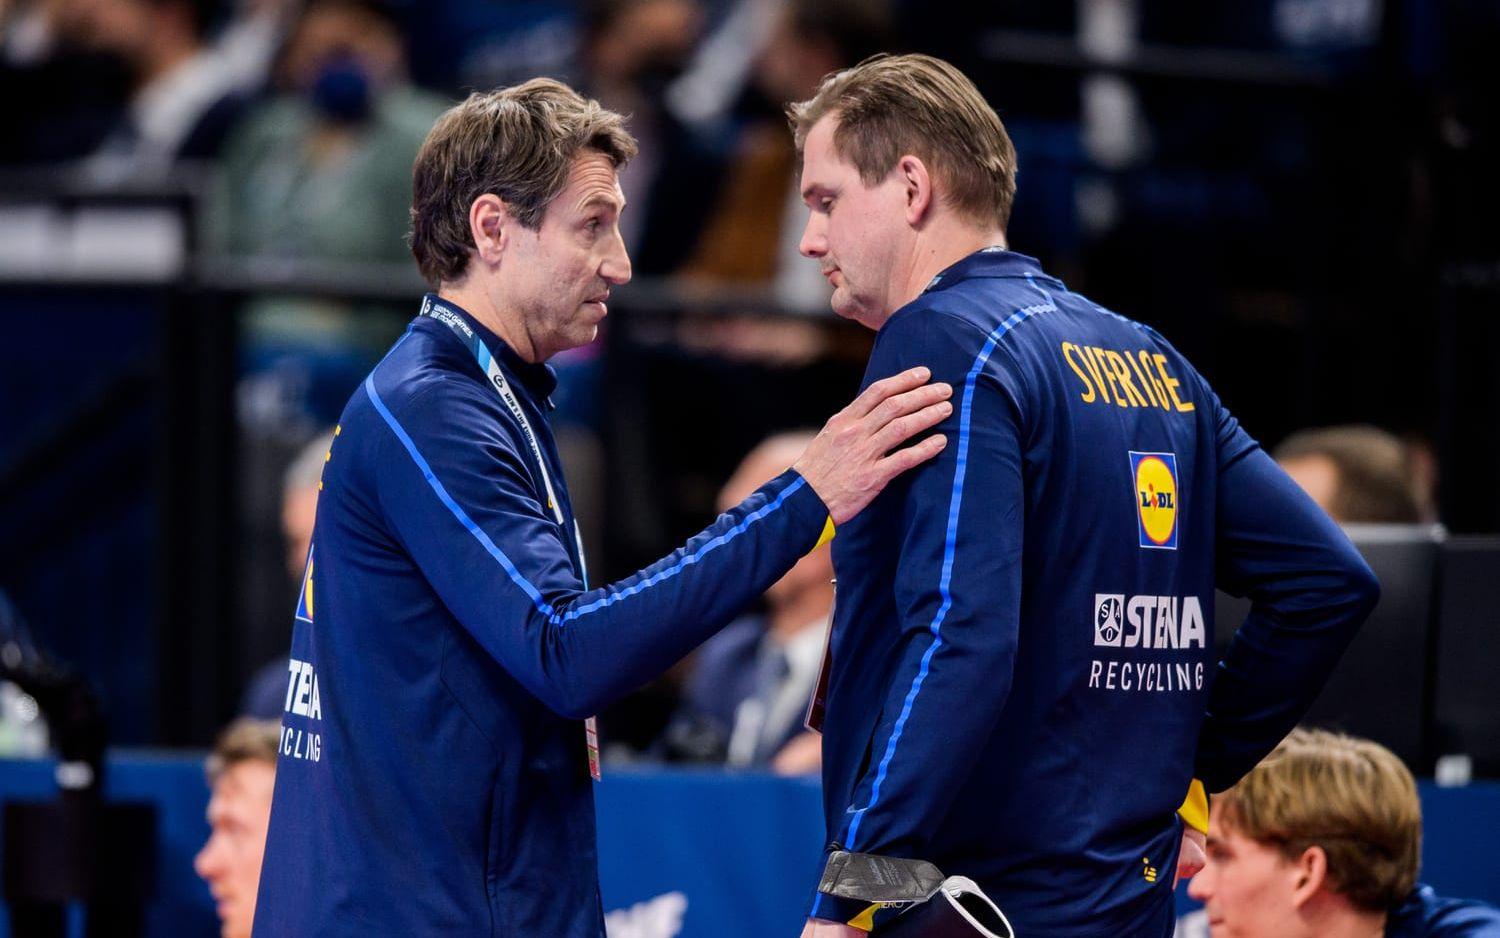 Efter EM-guldet i vintras fick Martin Boquist (till höger) sparken som assisterande förbundskapten. 